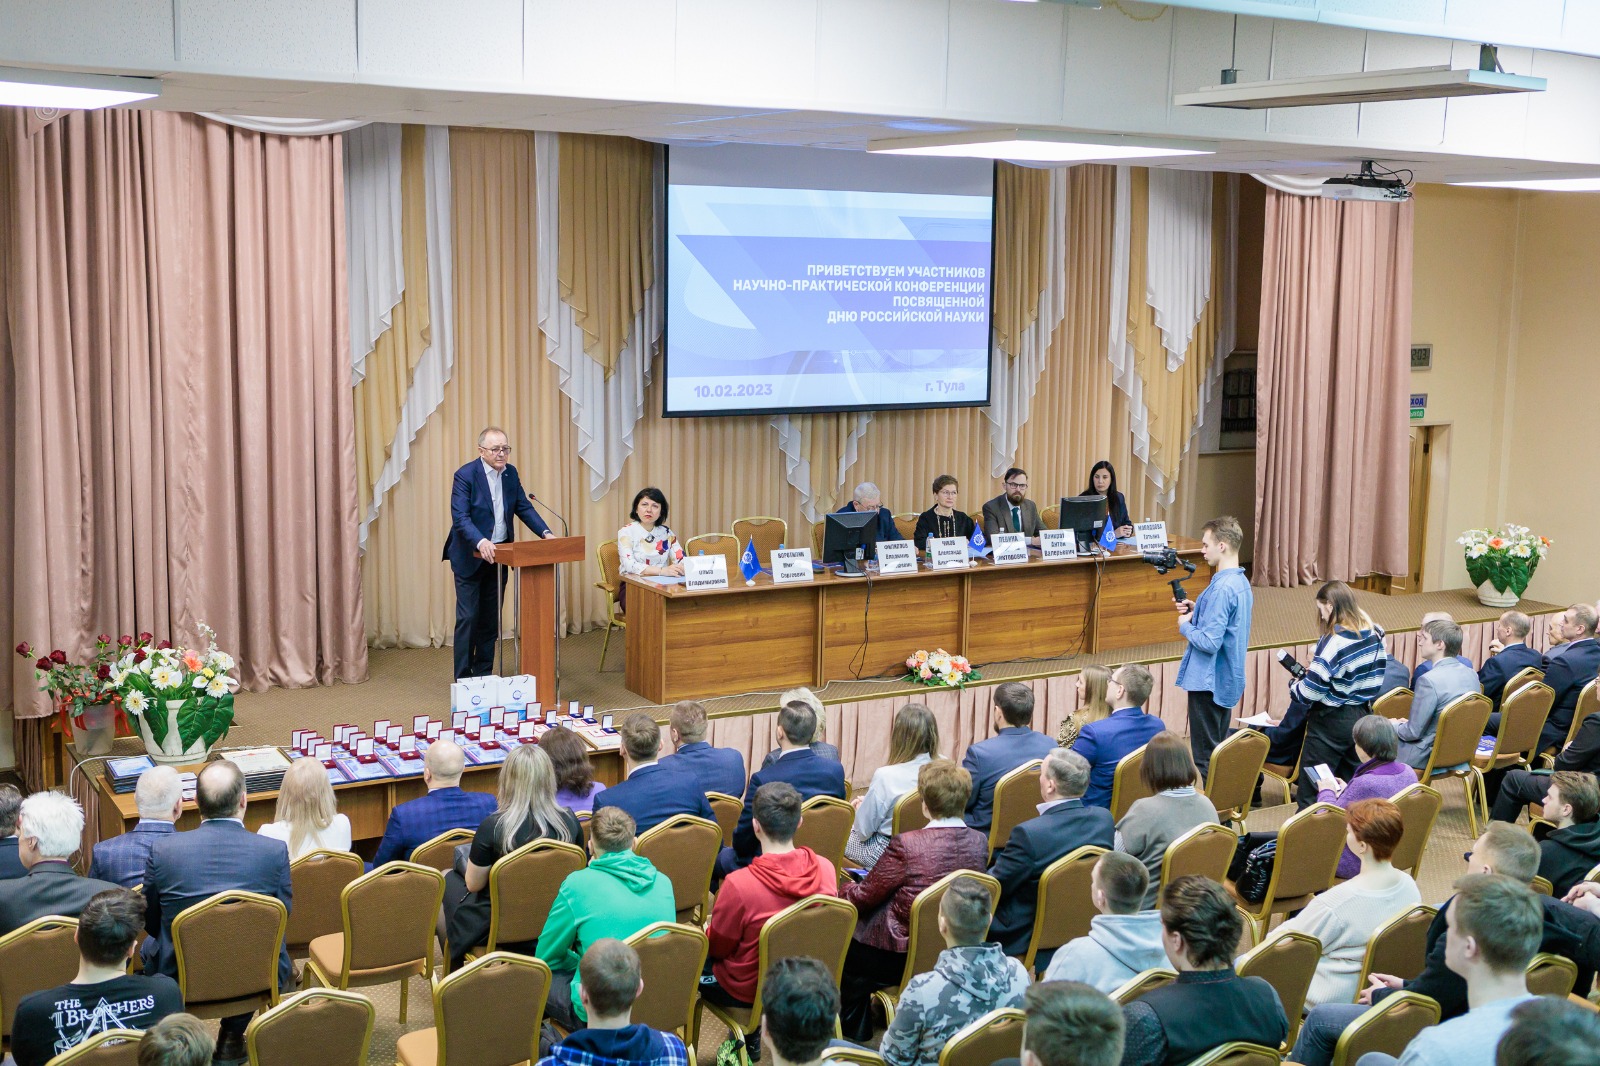 10 февраля в Доме науки и техники состоялась научно-практическая конференция, посвященная Дню российской науки